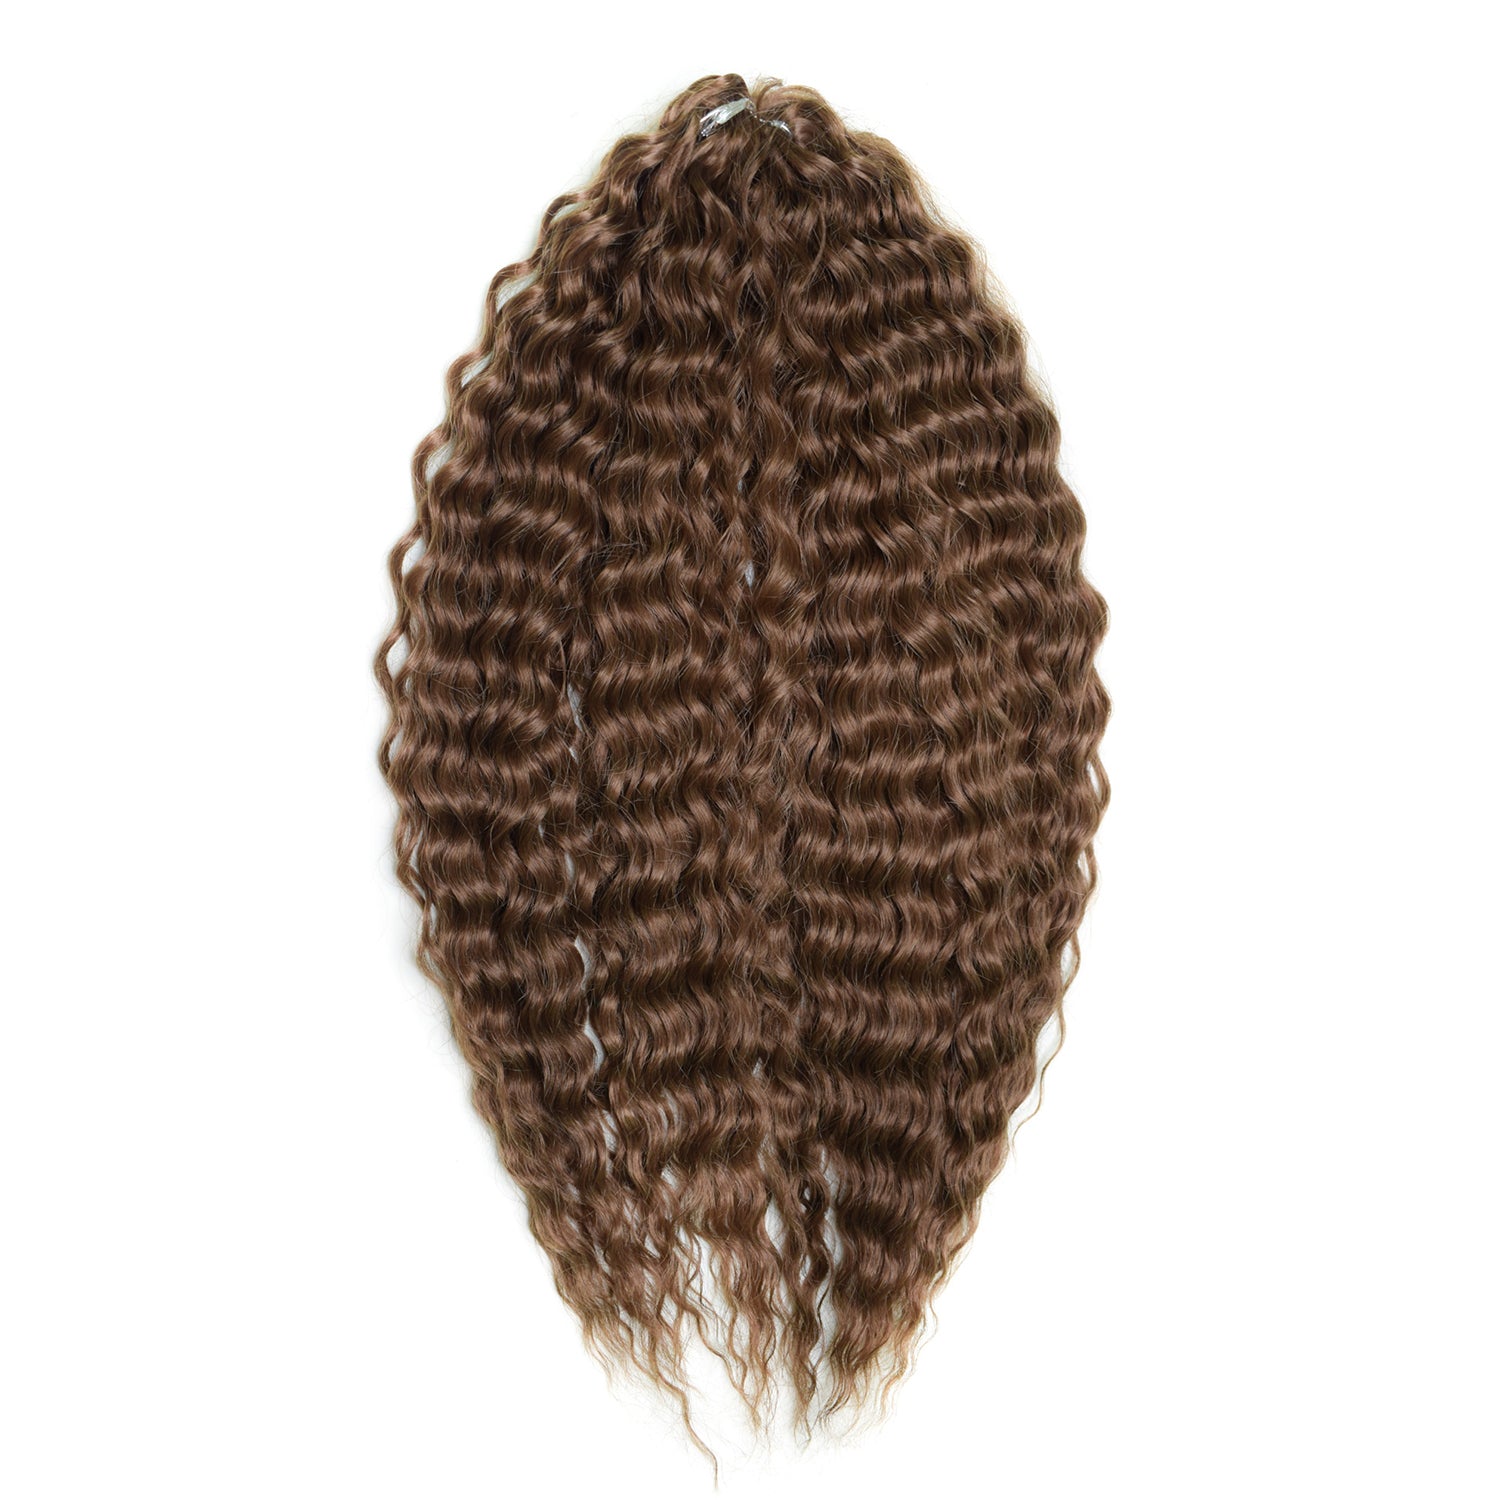 Афрокудри для плетения волос Ariel цвет 6 темно-русый 55см вес 300г афрокудри для плетения волос ariel ариэль fire оранжевый длина 66см вес 300г